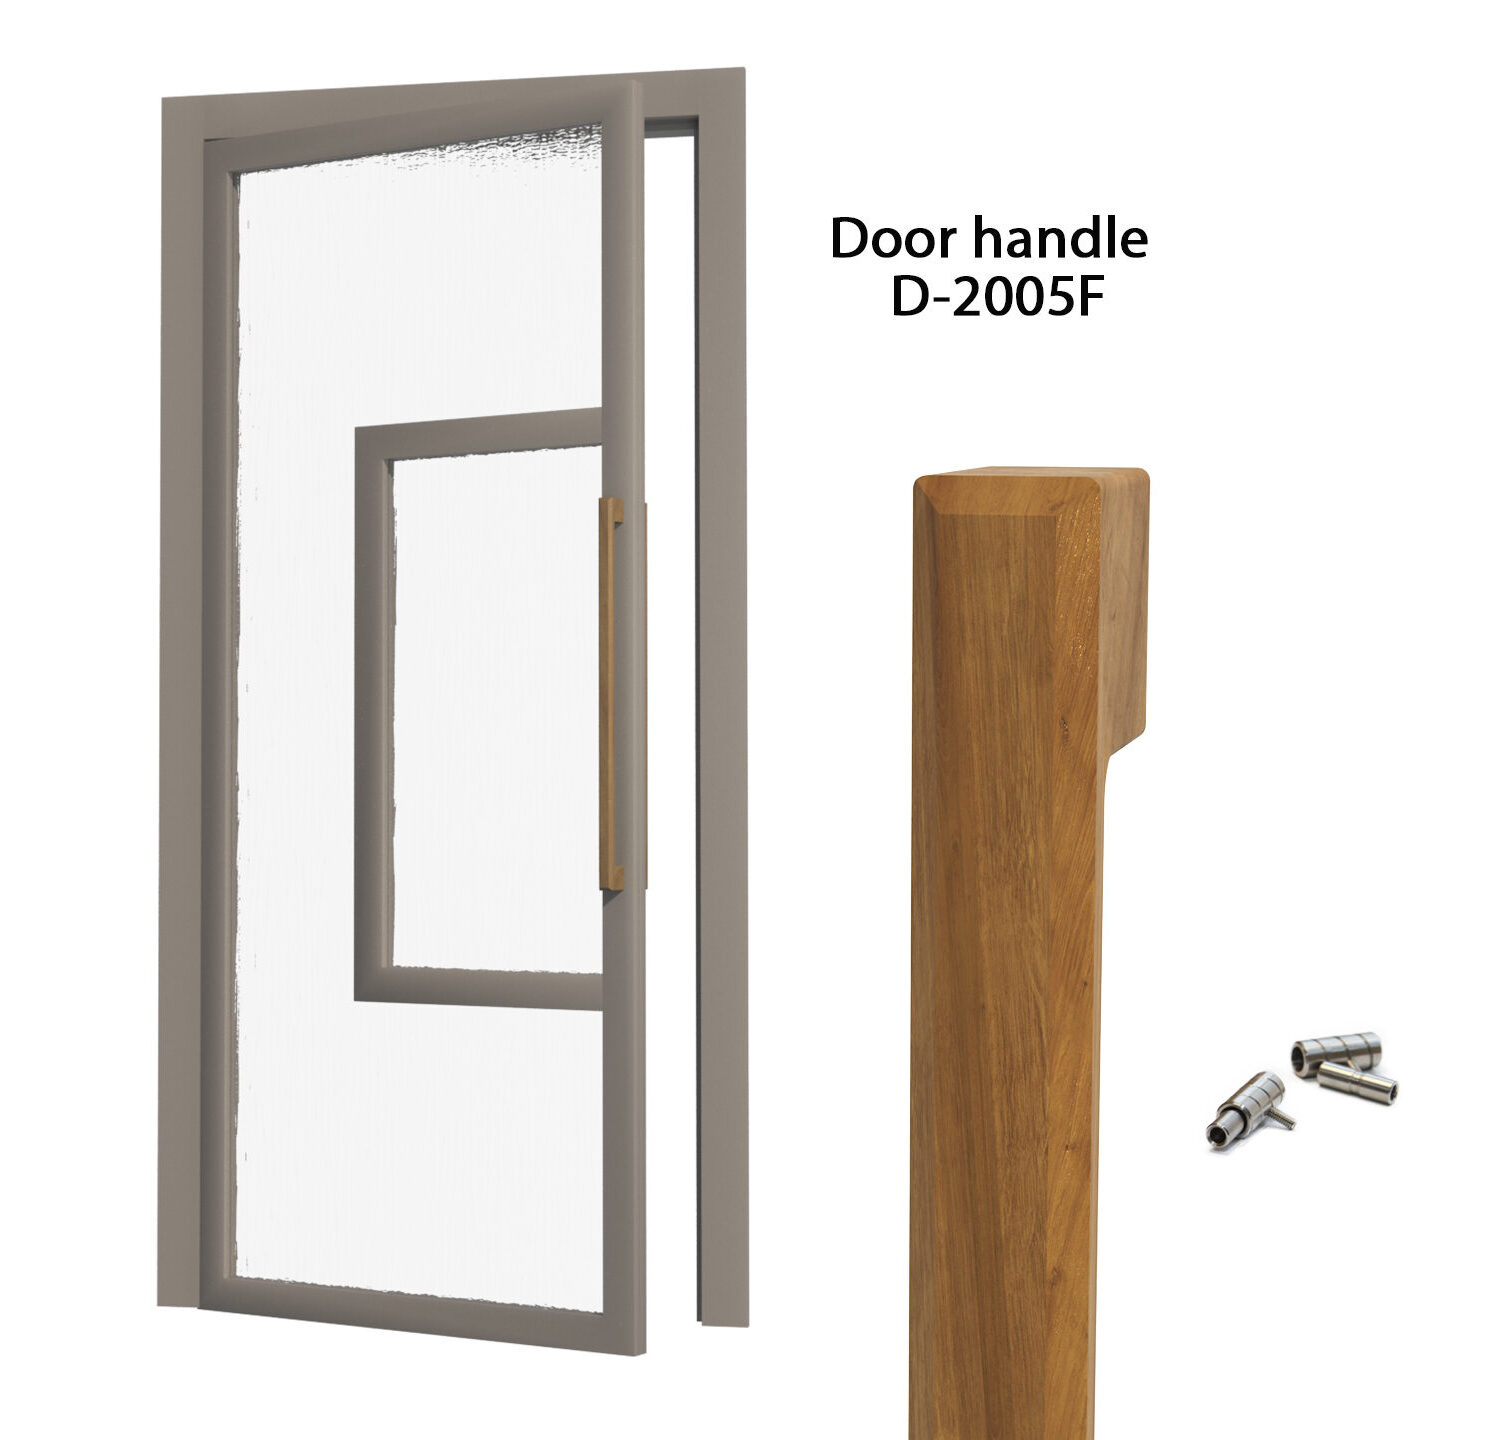 Solid oak door handles D-2005F